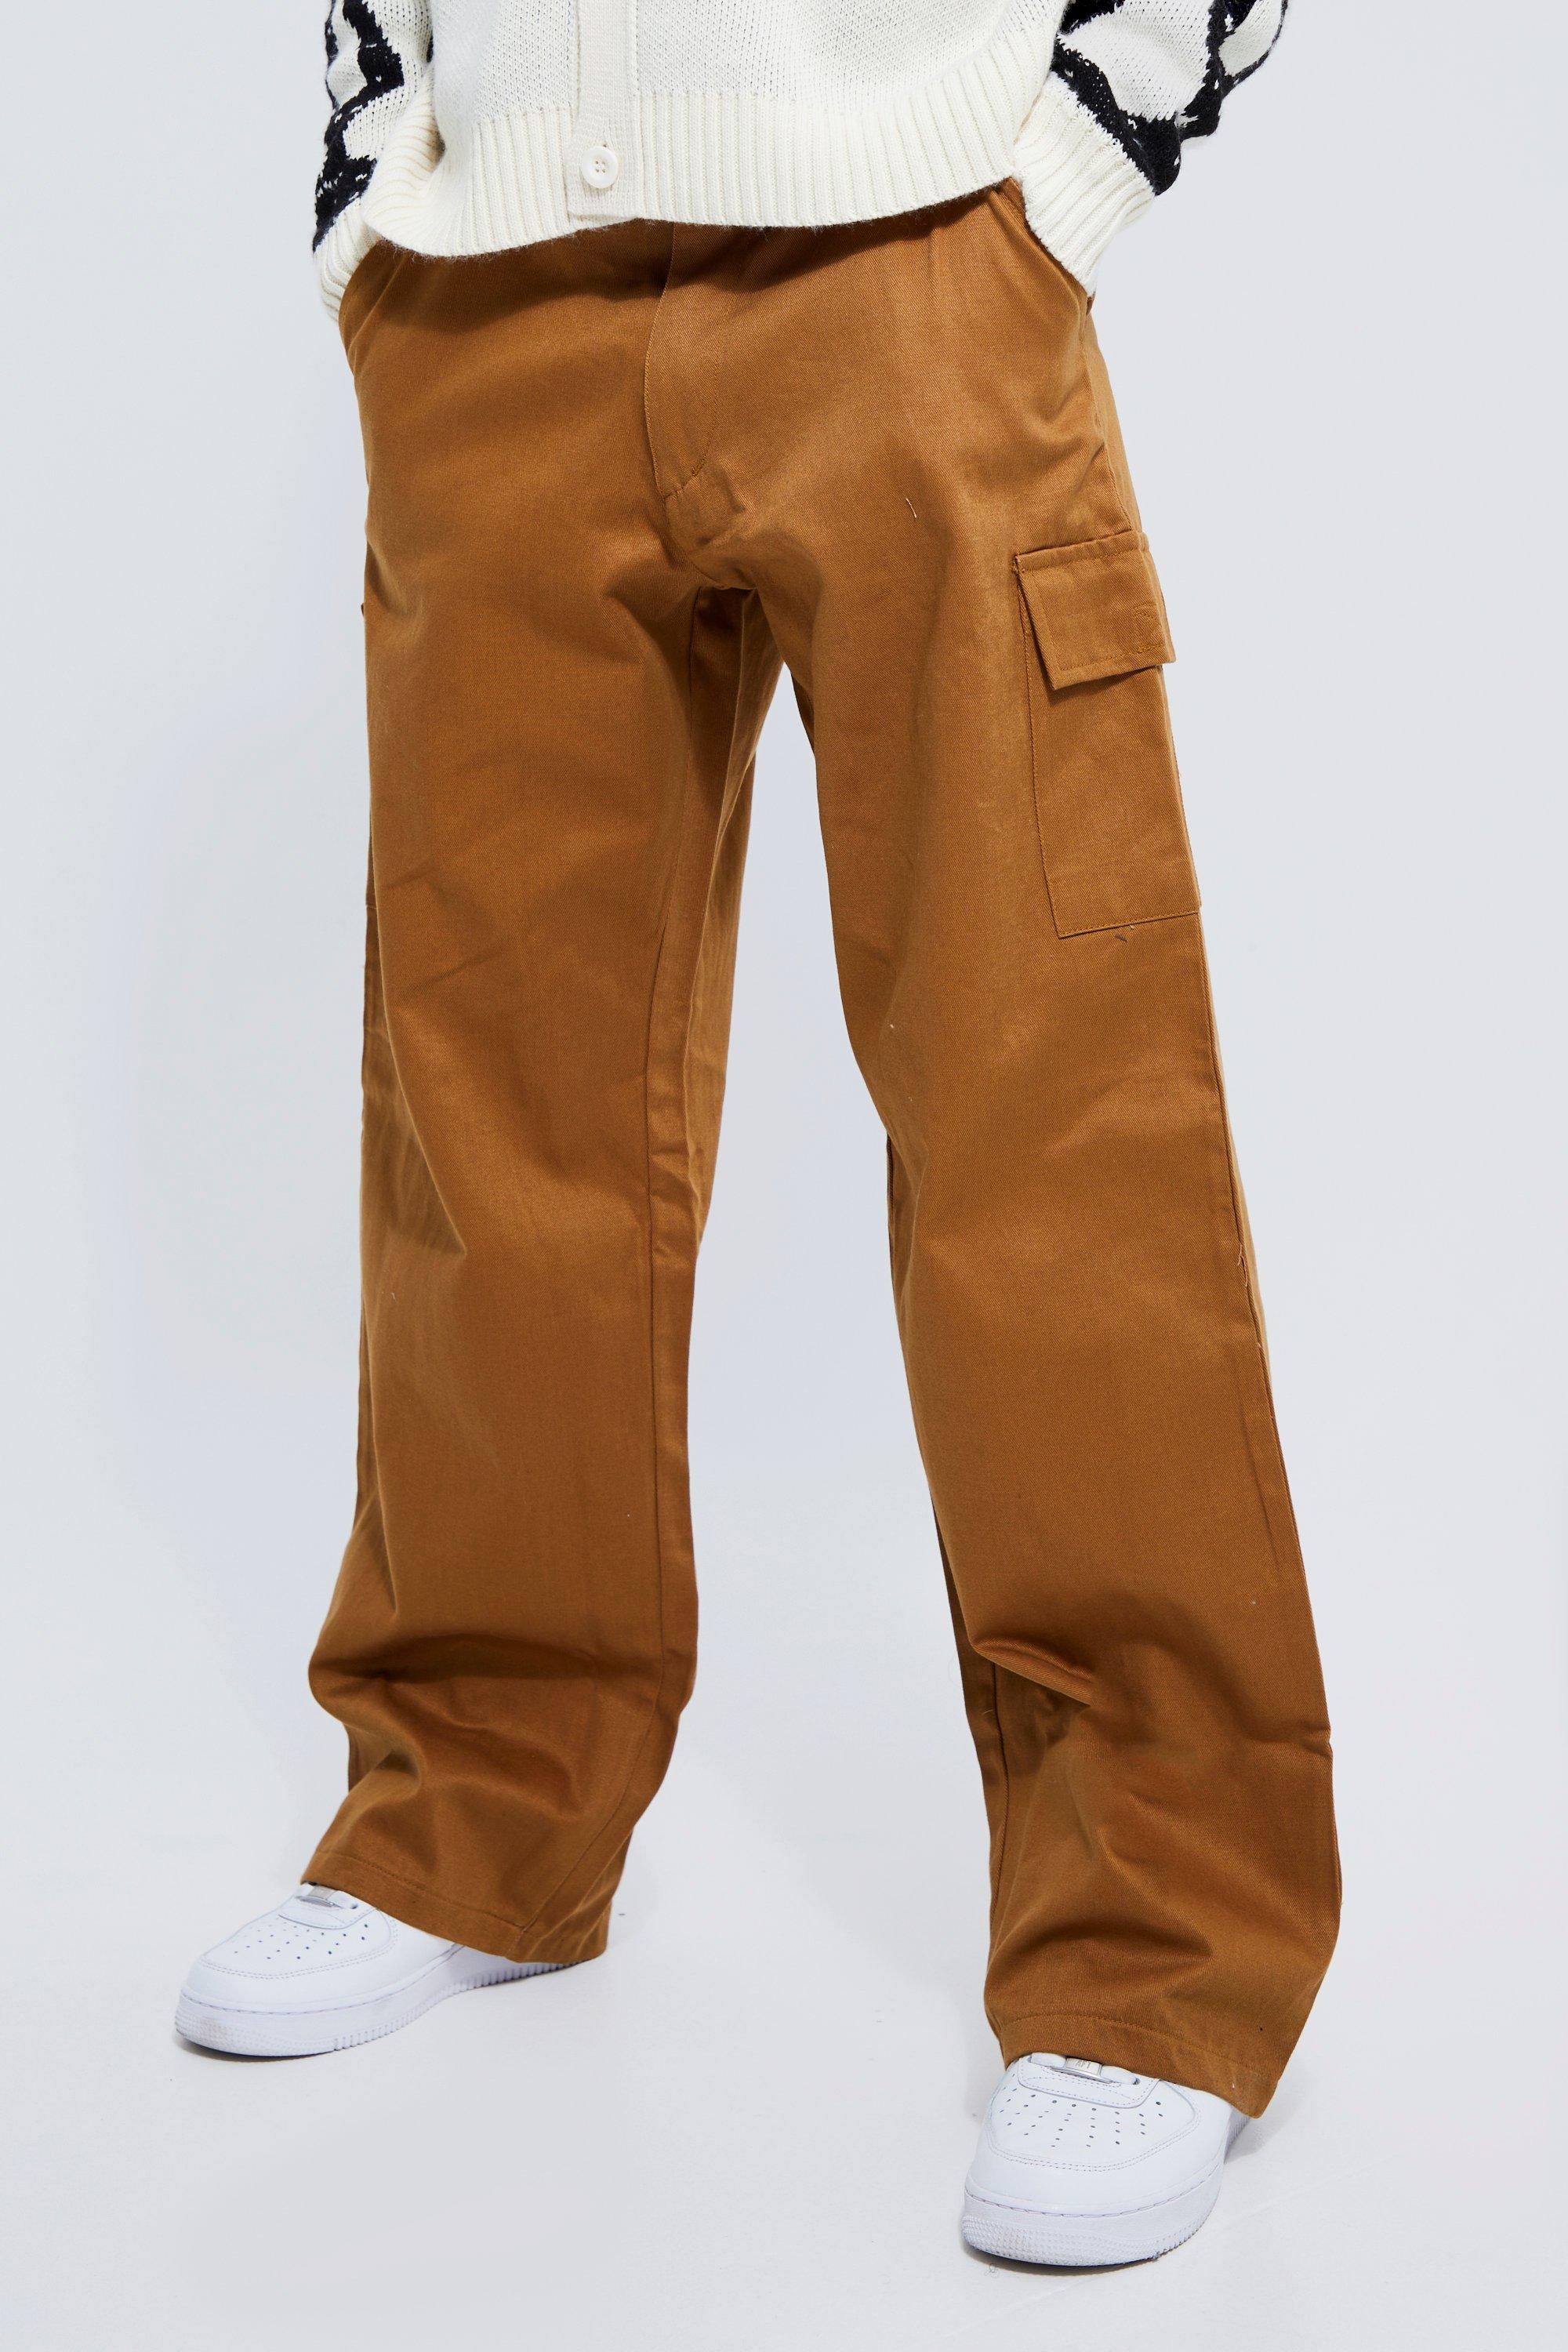 pantalon cargo large à ceinture homme - brun doré - 28, brun doré